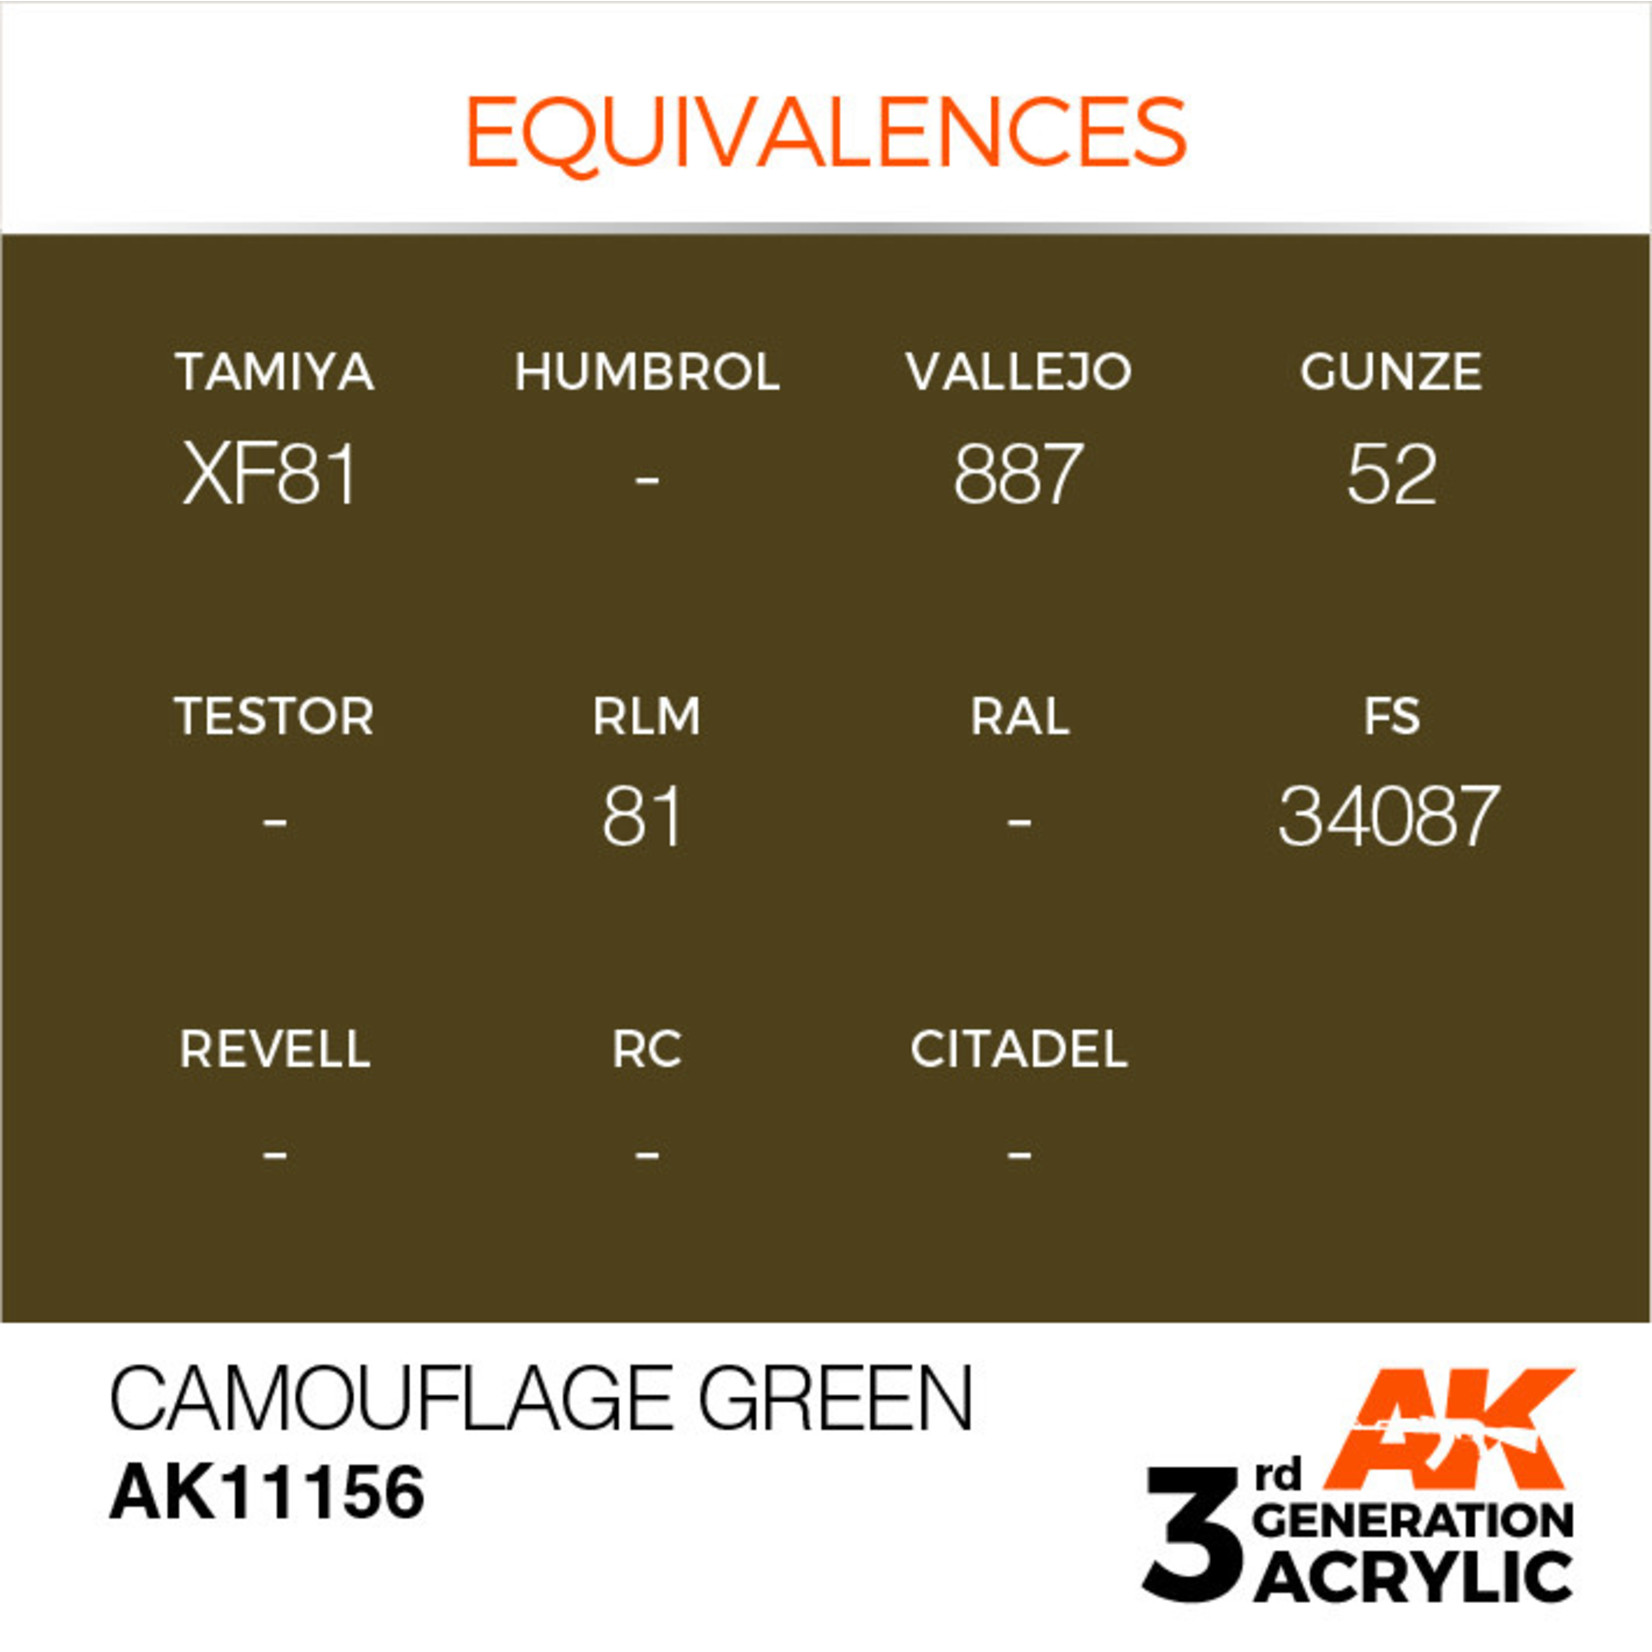 AK Interactive AK11156 3G Acrylic Camouflage Green 17ml